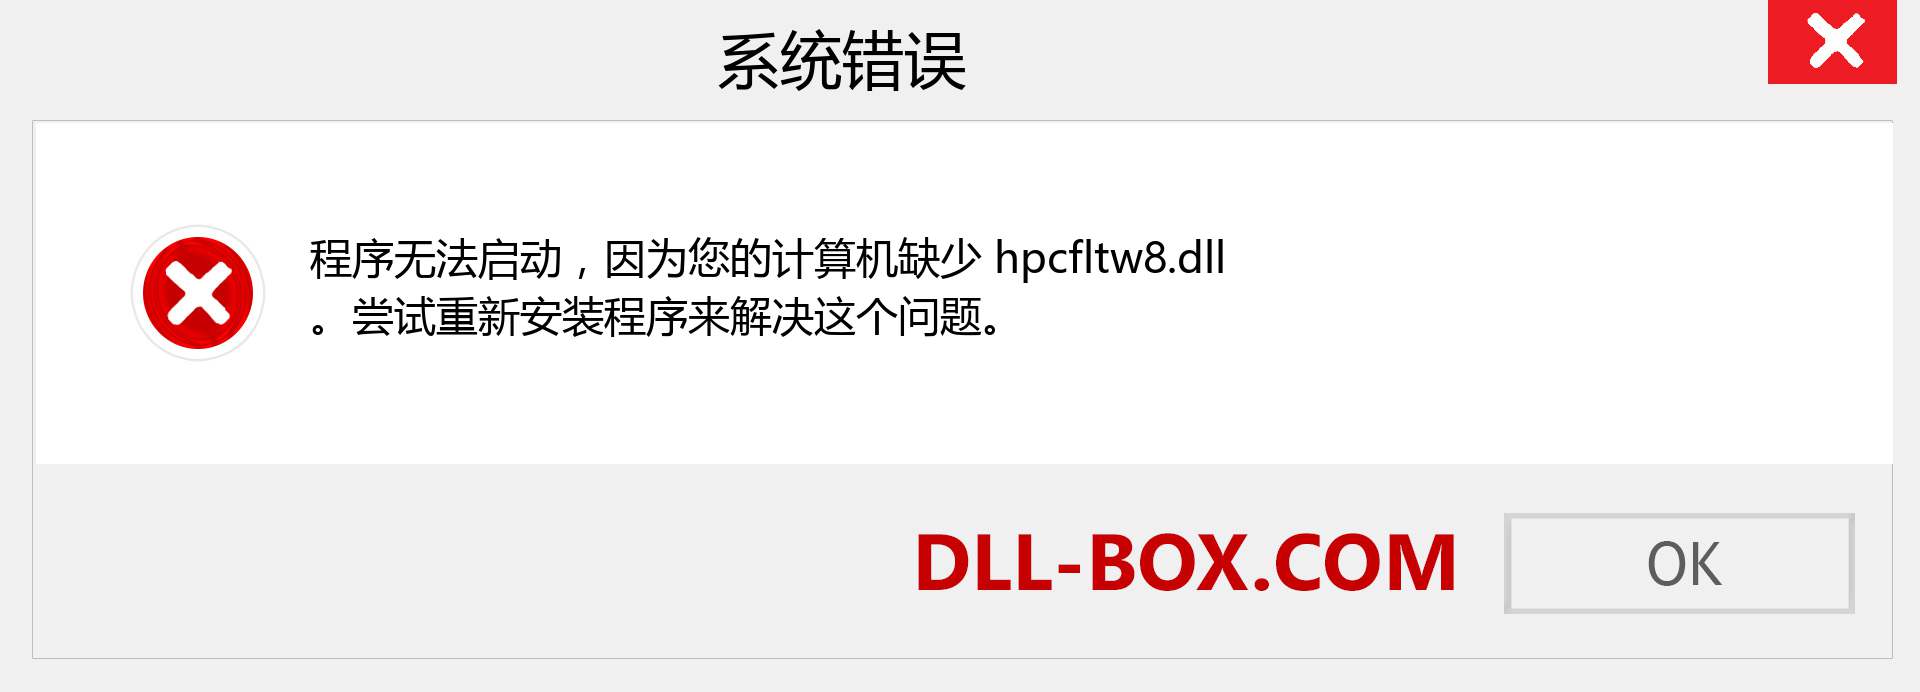 hpcfltw8.dll 文件丢失？。 适用于 Windows 7、8、10 的下载 - 修复 Windows、照片、图像上的 hpcfltw8 dll 丢失错误